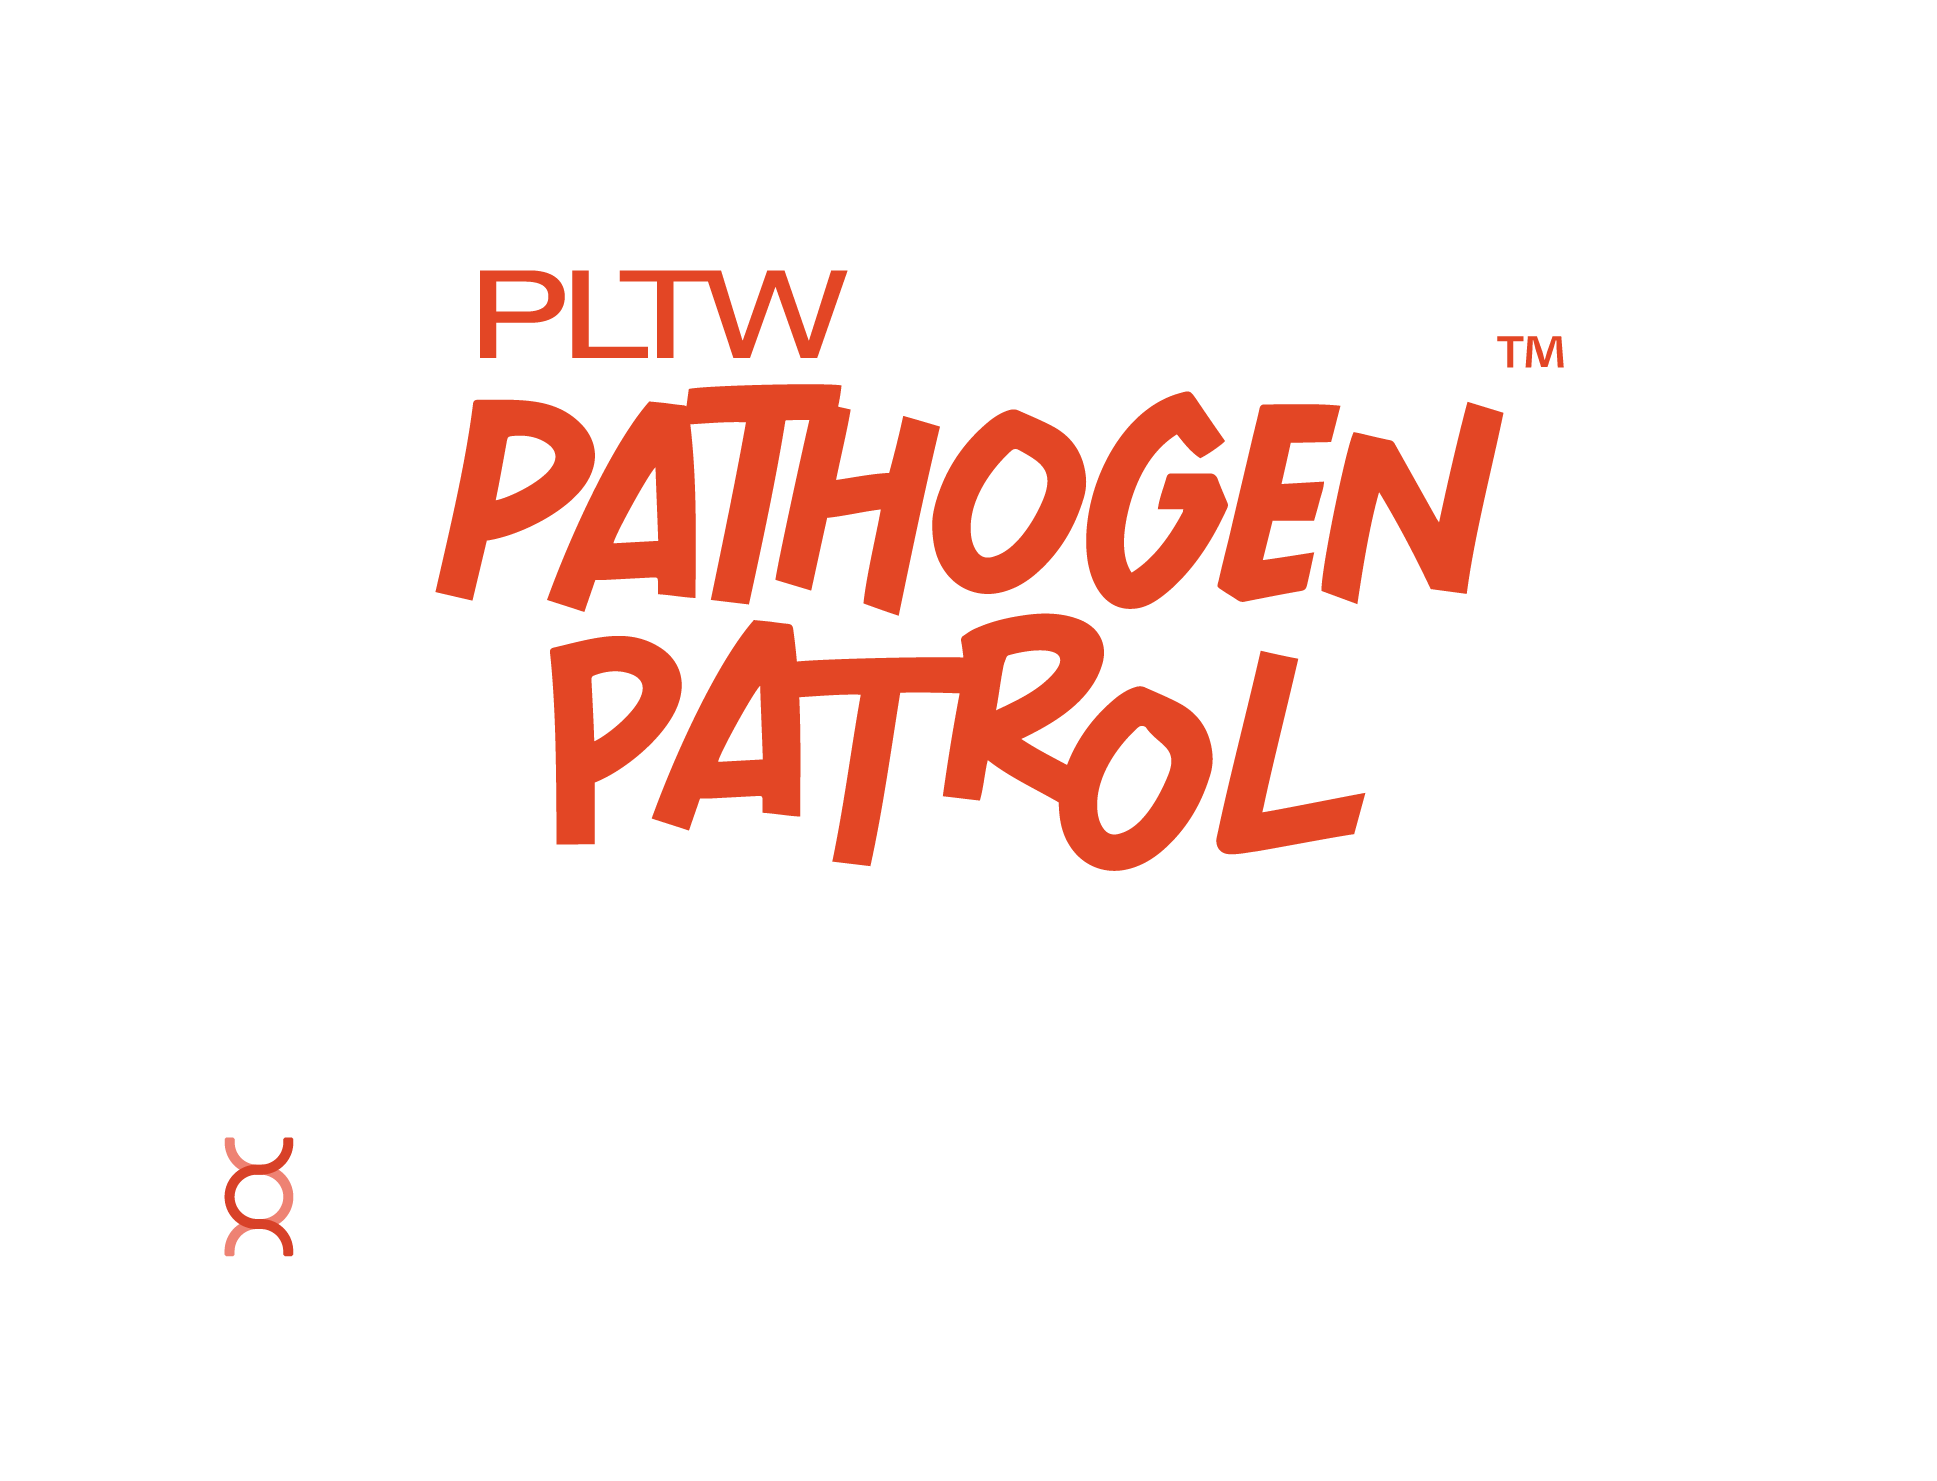 Pathogen Patrol lock up2